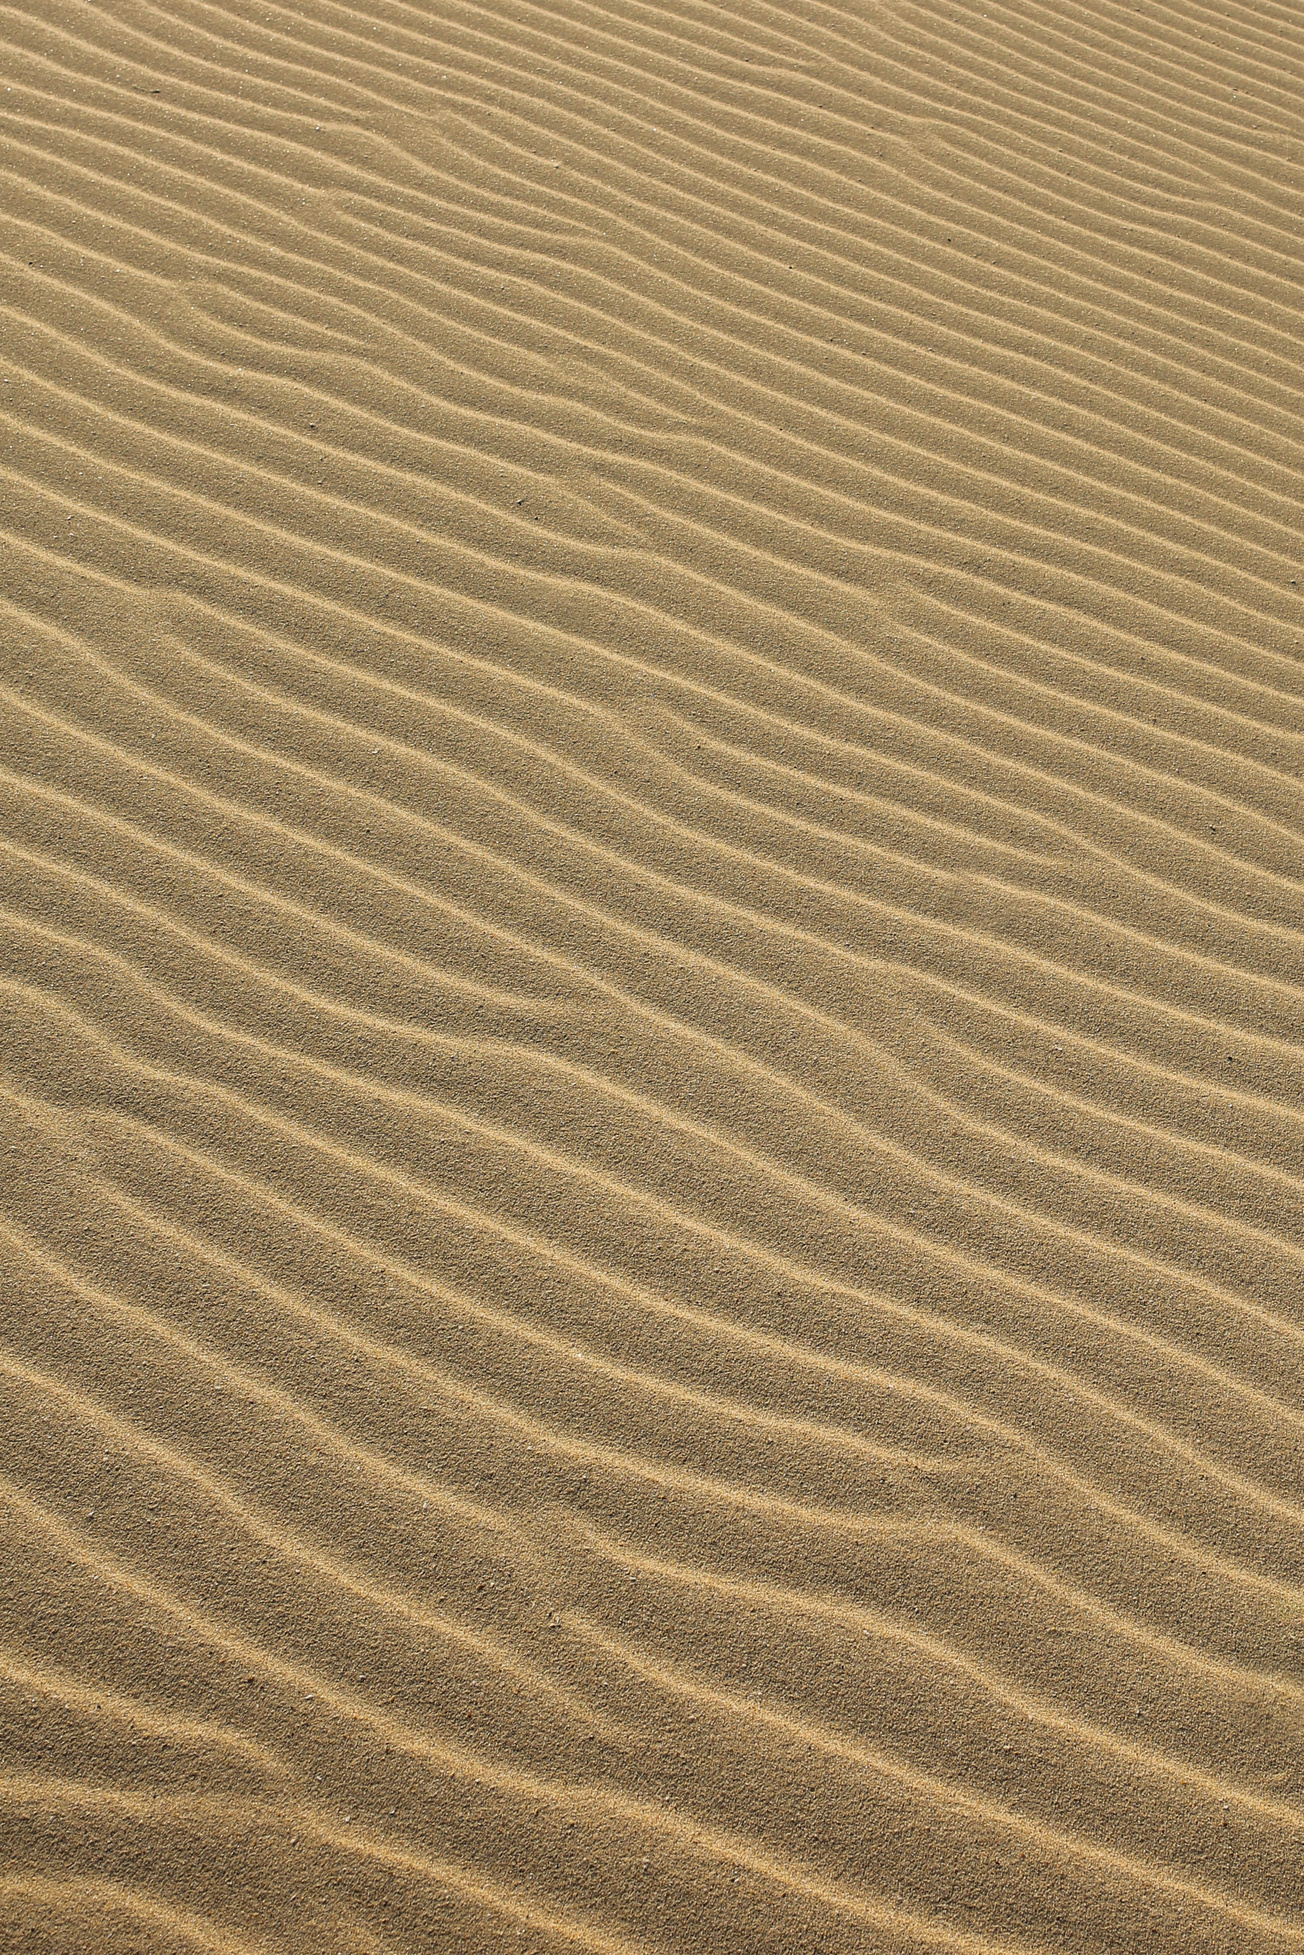 Lines on Sand